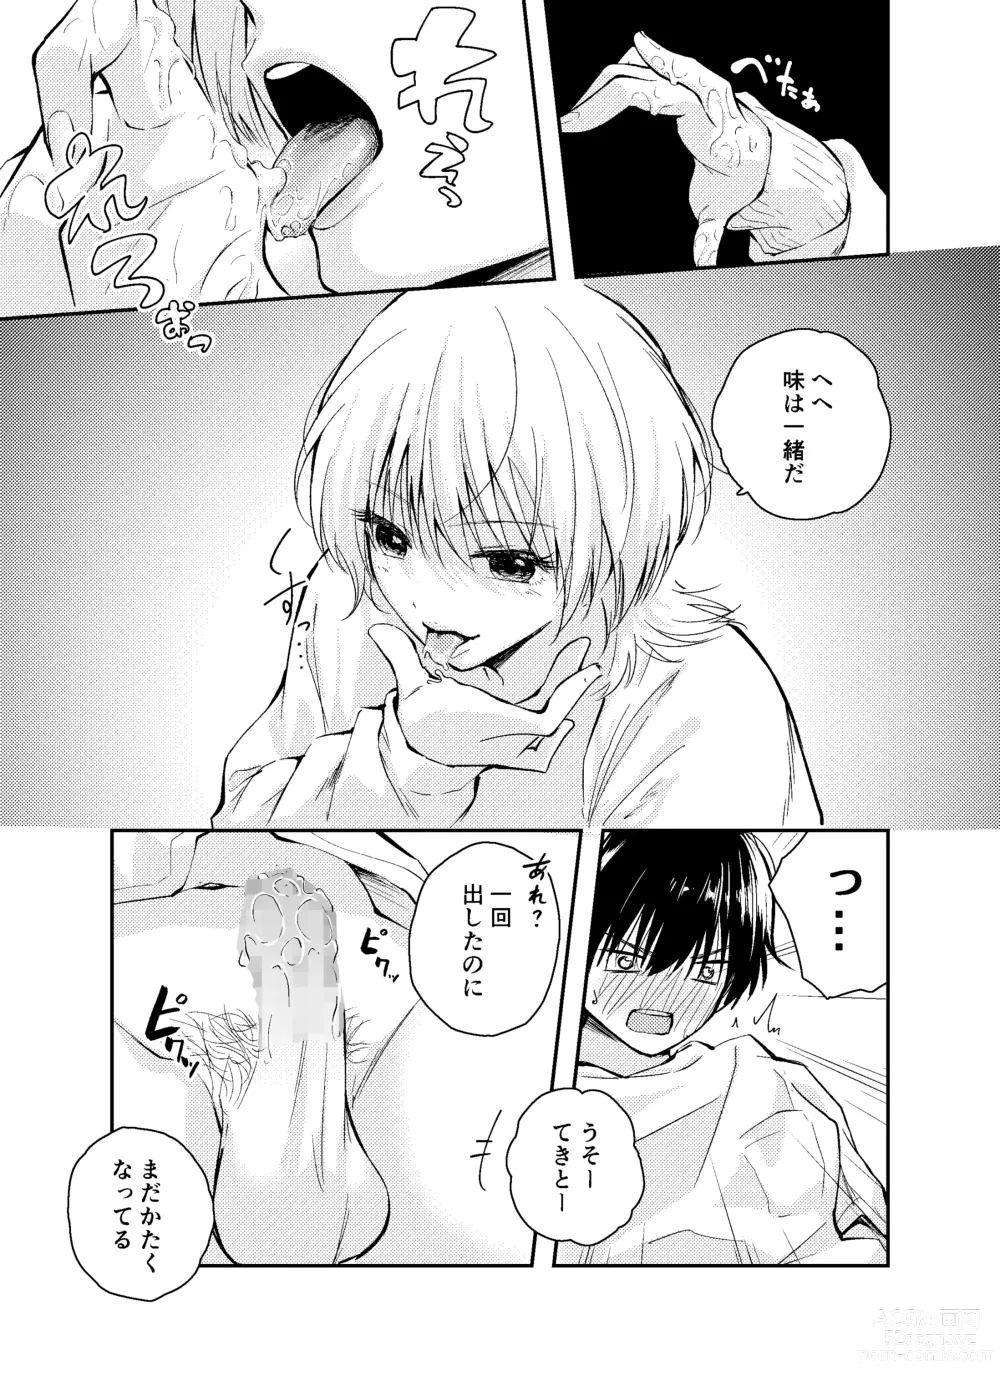 Page 19 of doujinshi Mukashi no Sugata ni Modotta Otto to no Sex wa Uwaki desu ka?